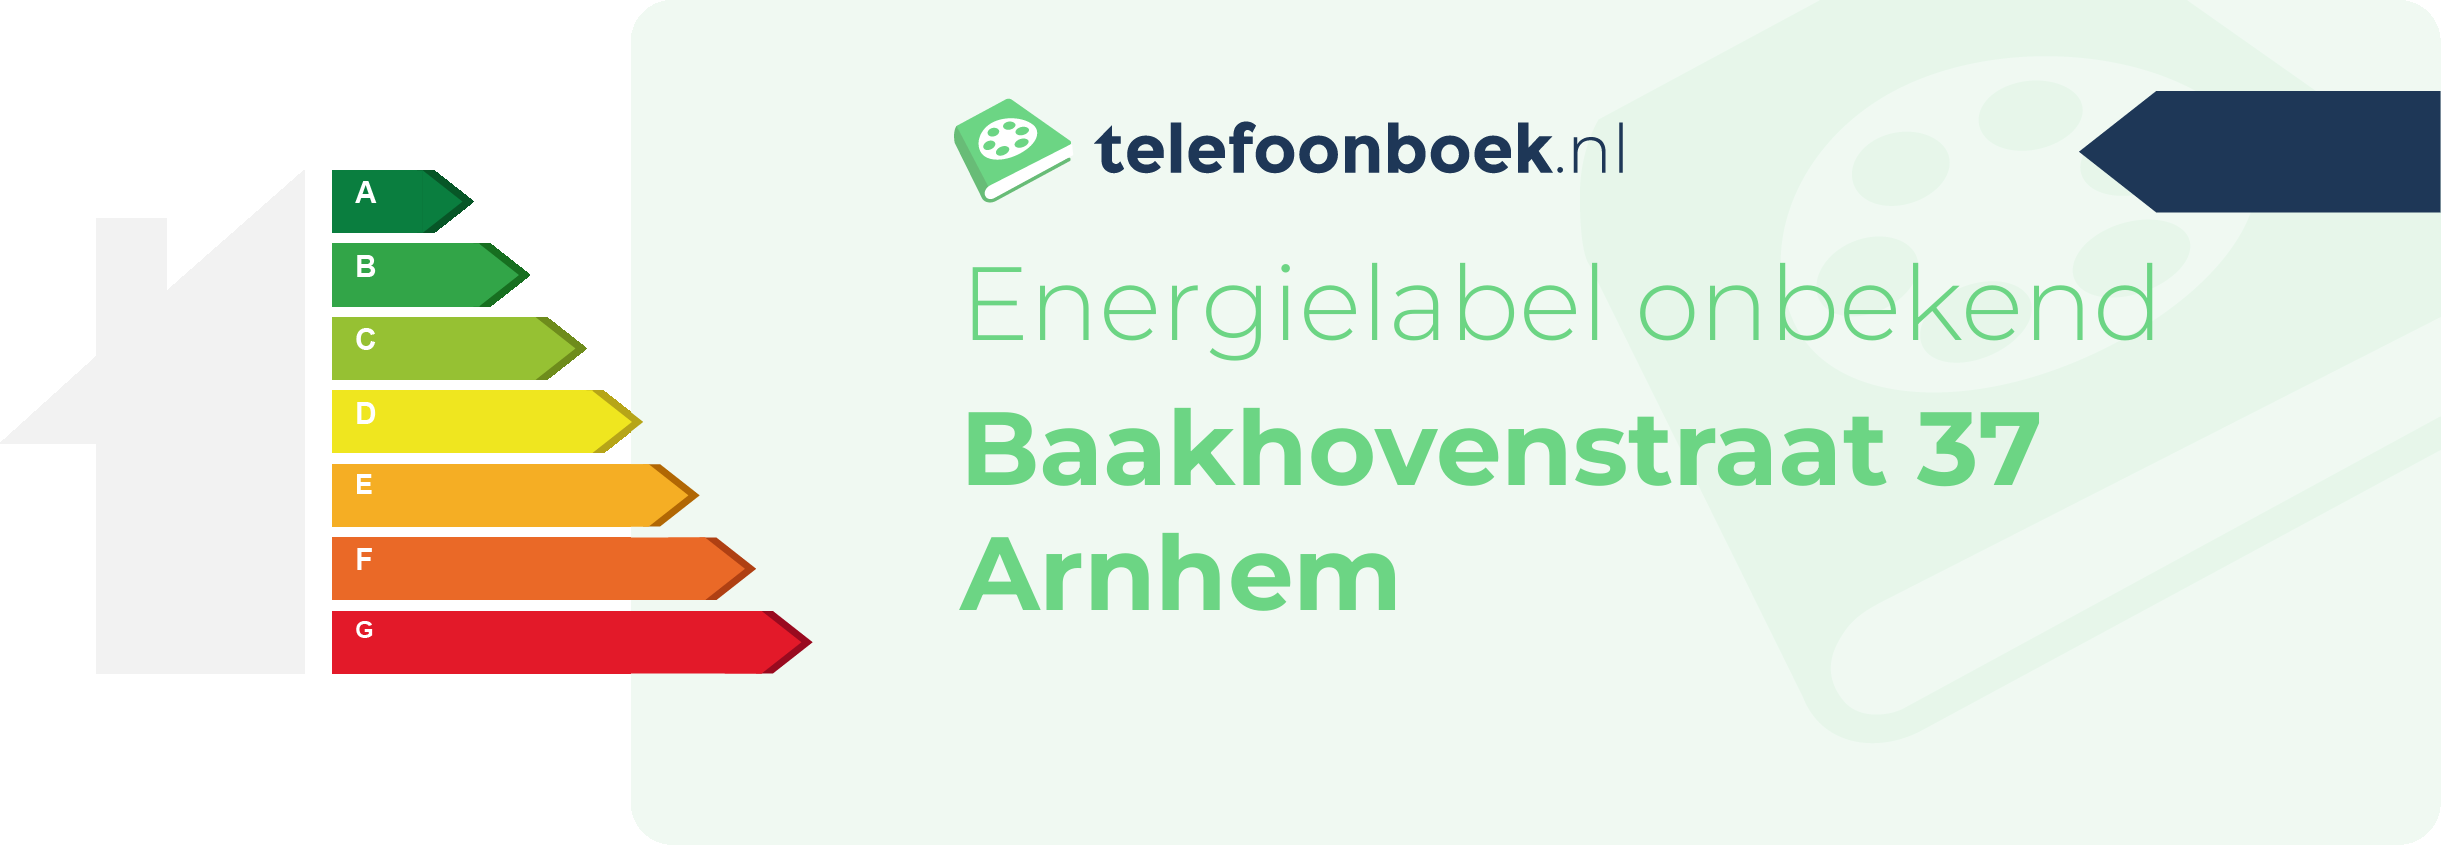 Energielabel Baakhovenstraat 37 Arnhem